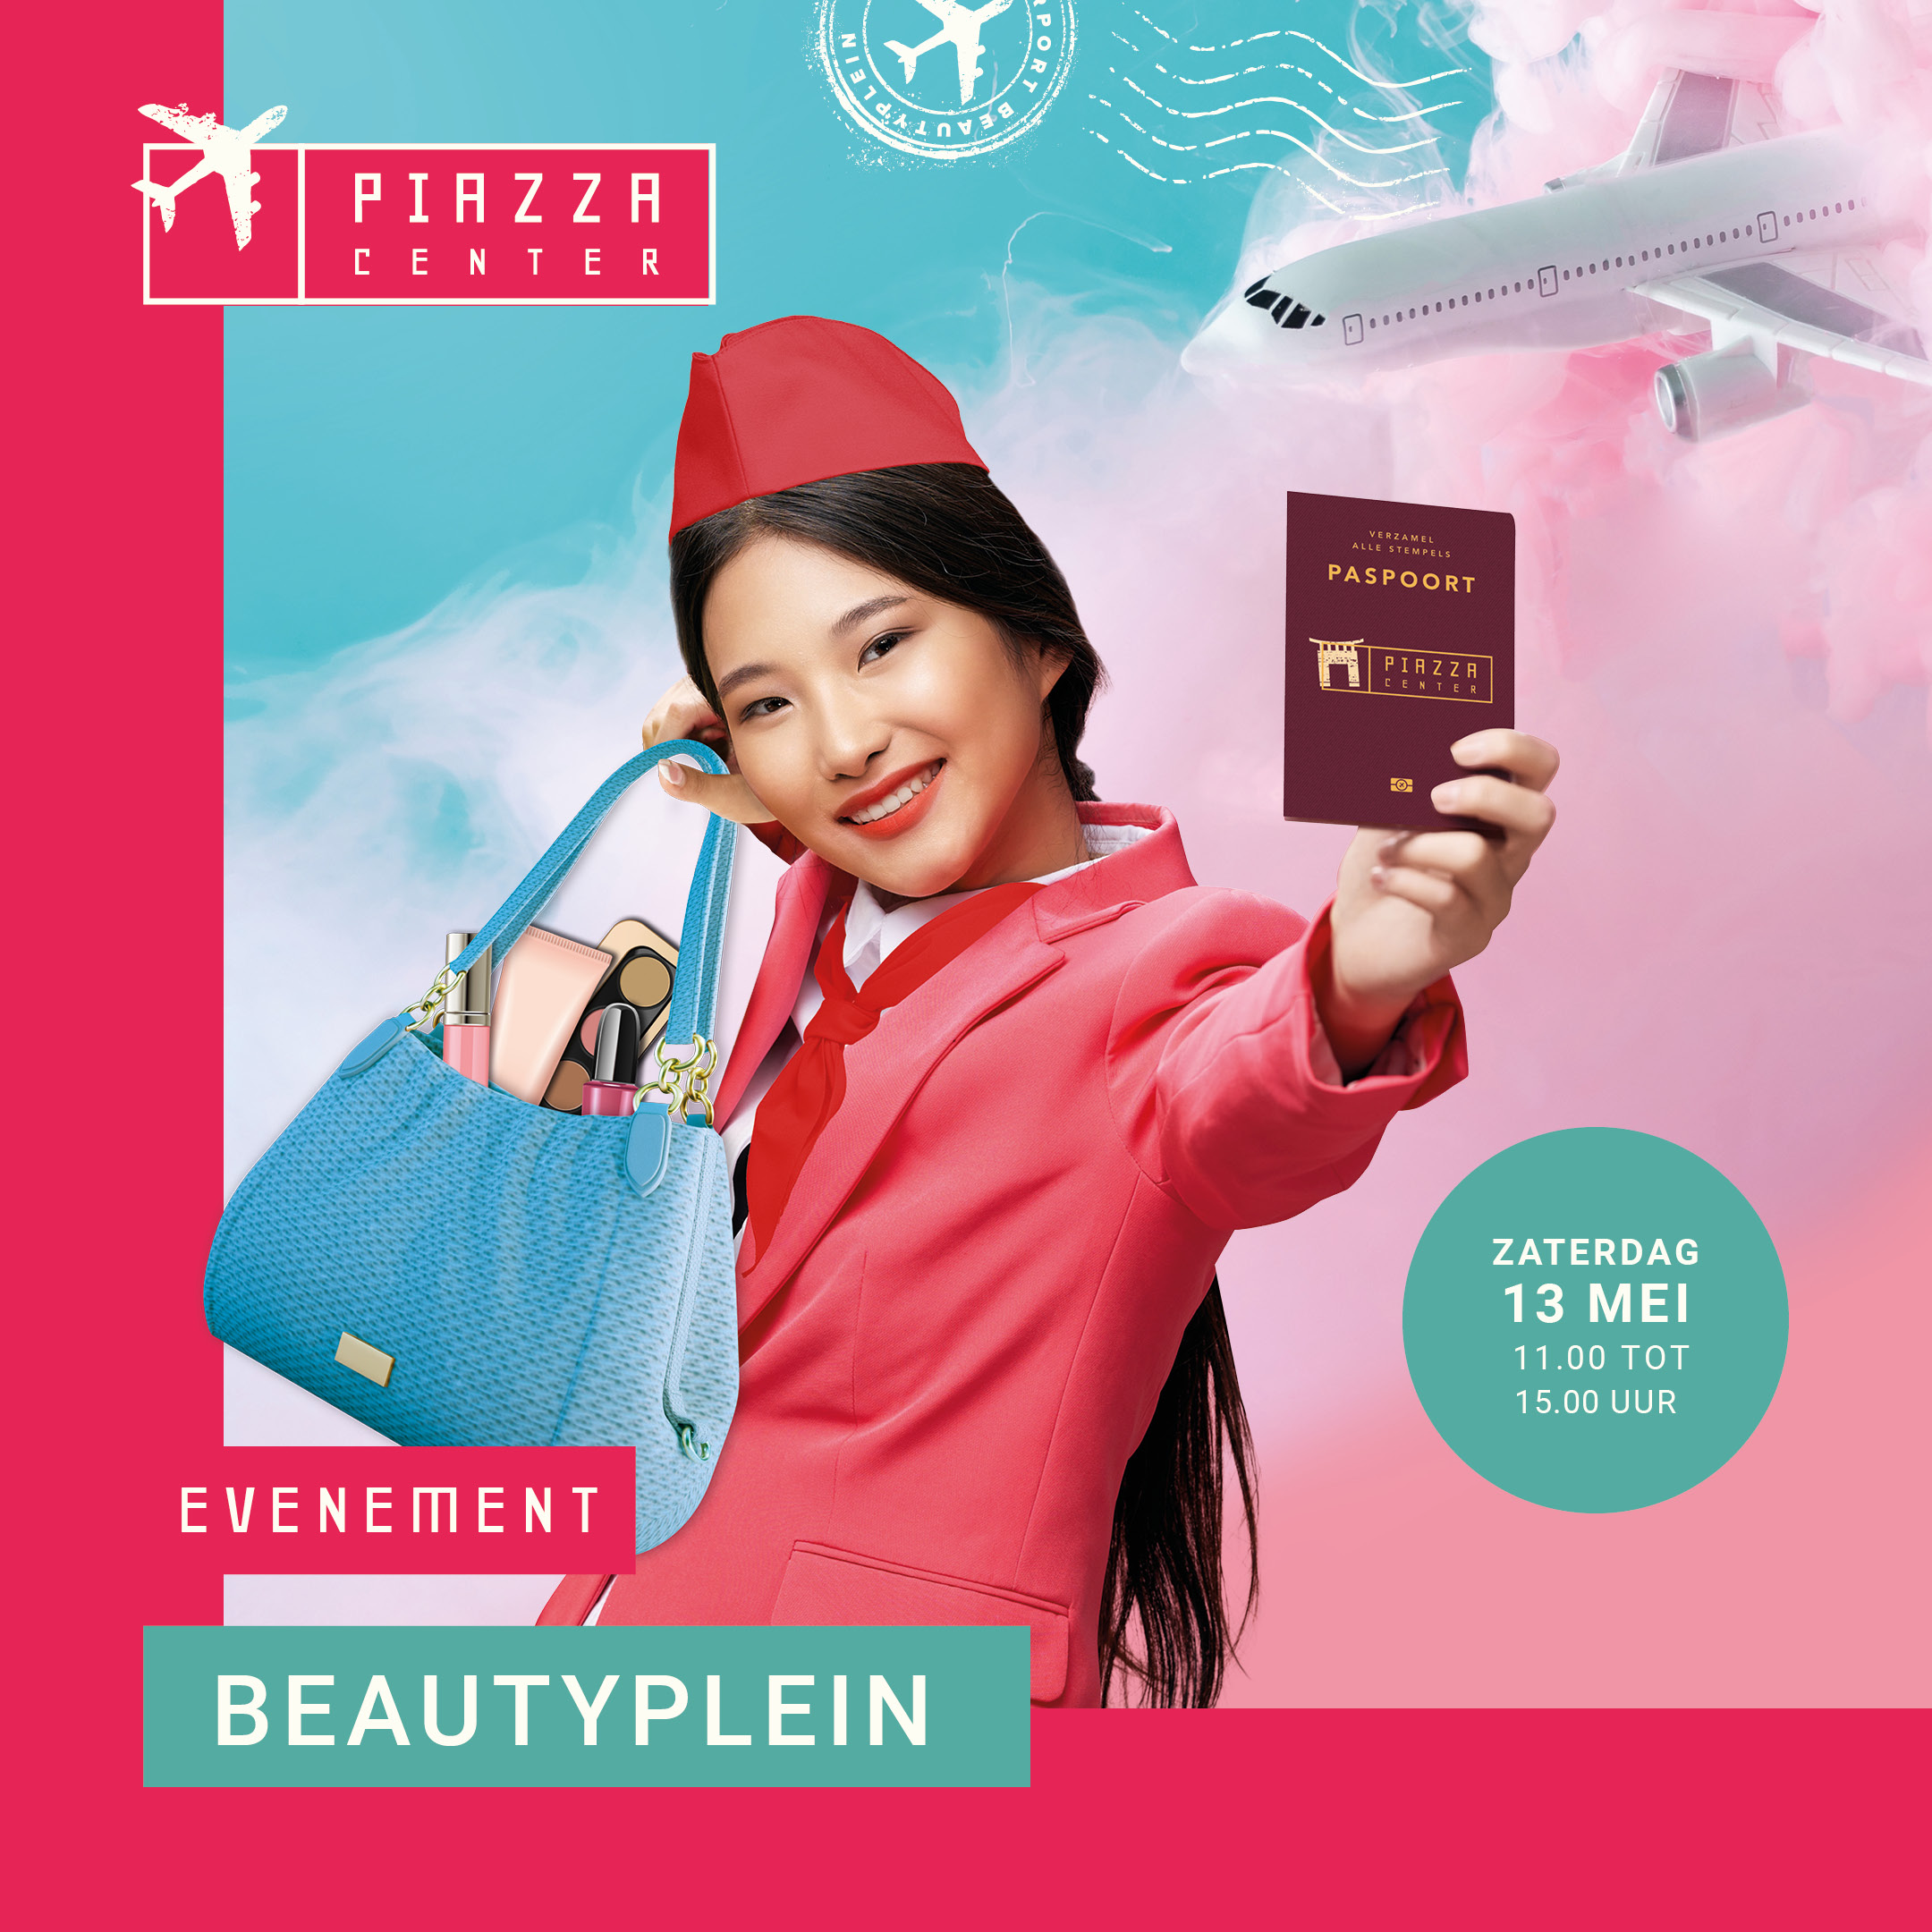 Poster met stewardess die een paspoort en tas laat zien.